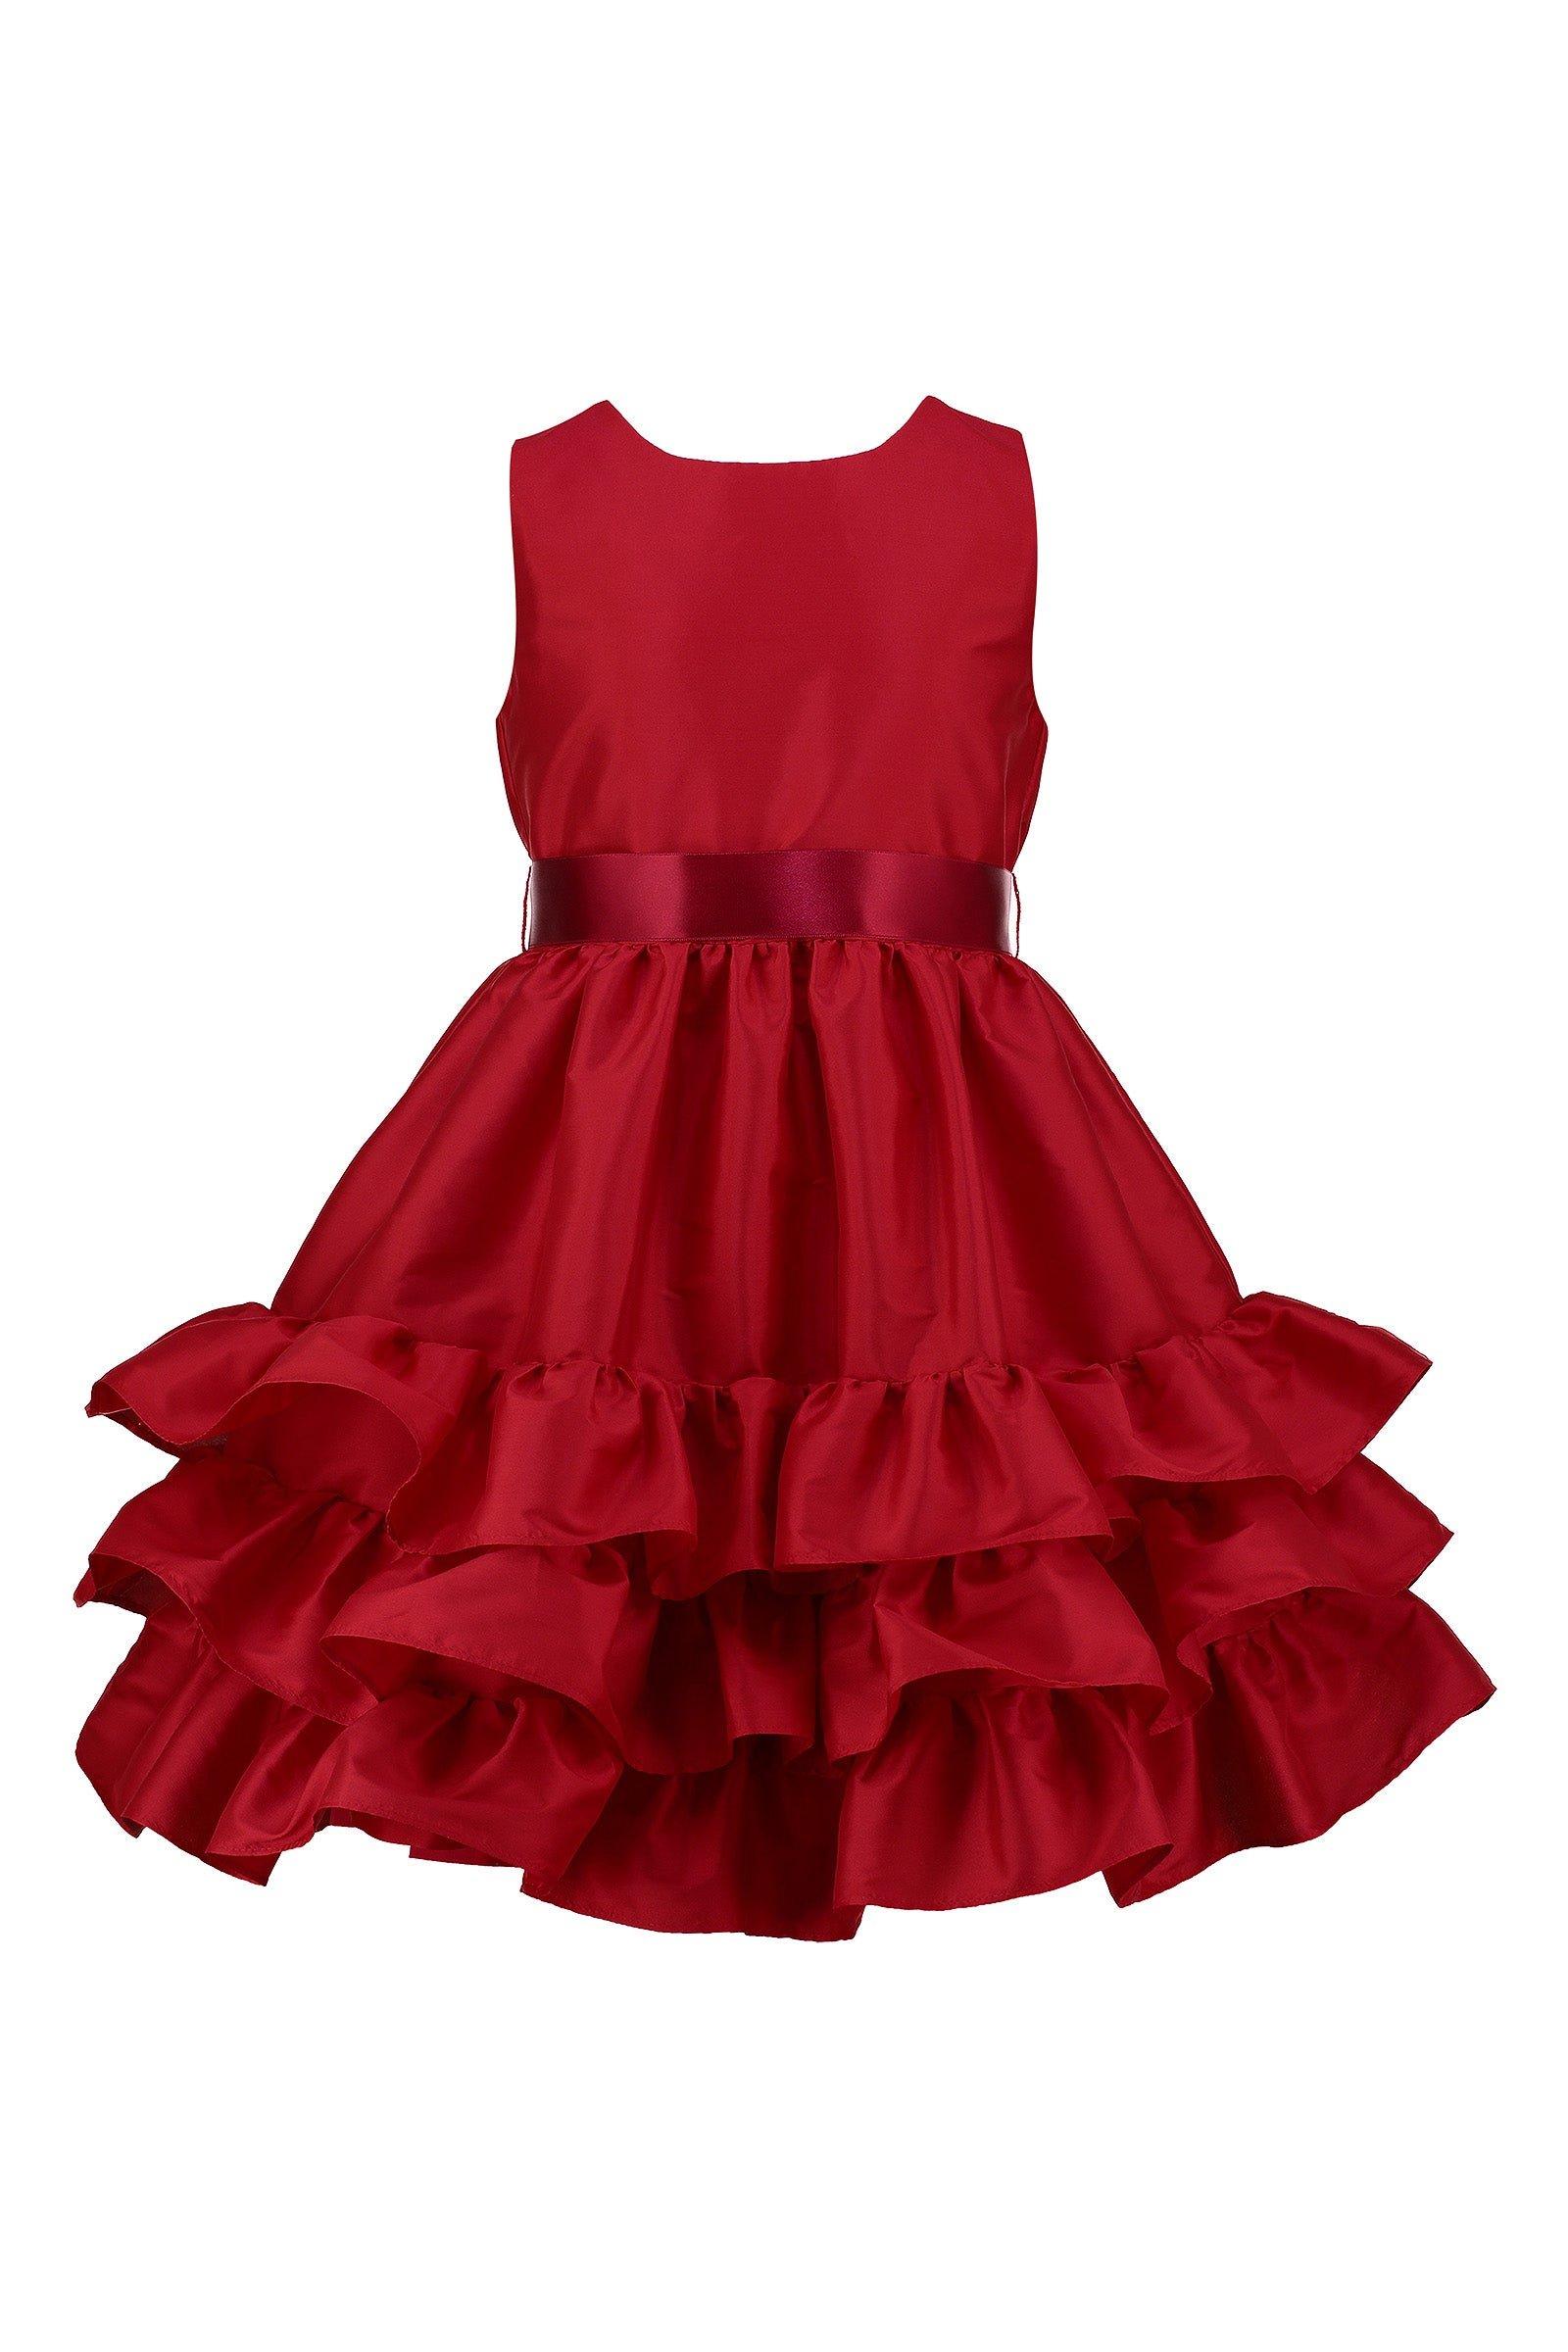 Атласное вечернее платье Arabella с оборками HOLLY HASTIE, красный роскошное розовое платье с оборками для девочек подростков платье с цветами для малышей модные платья для показа дня рождения свадьбы ве